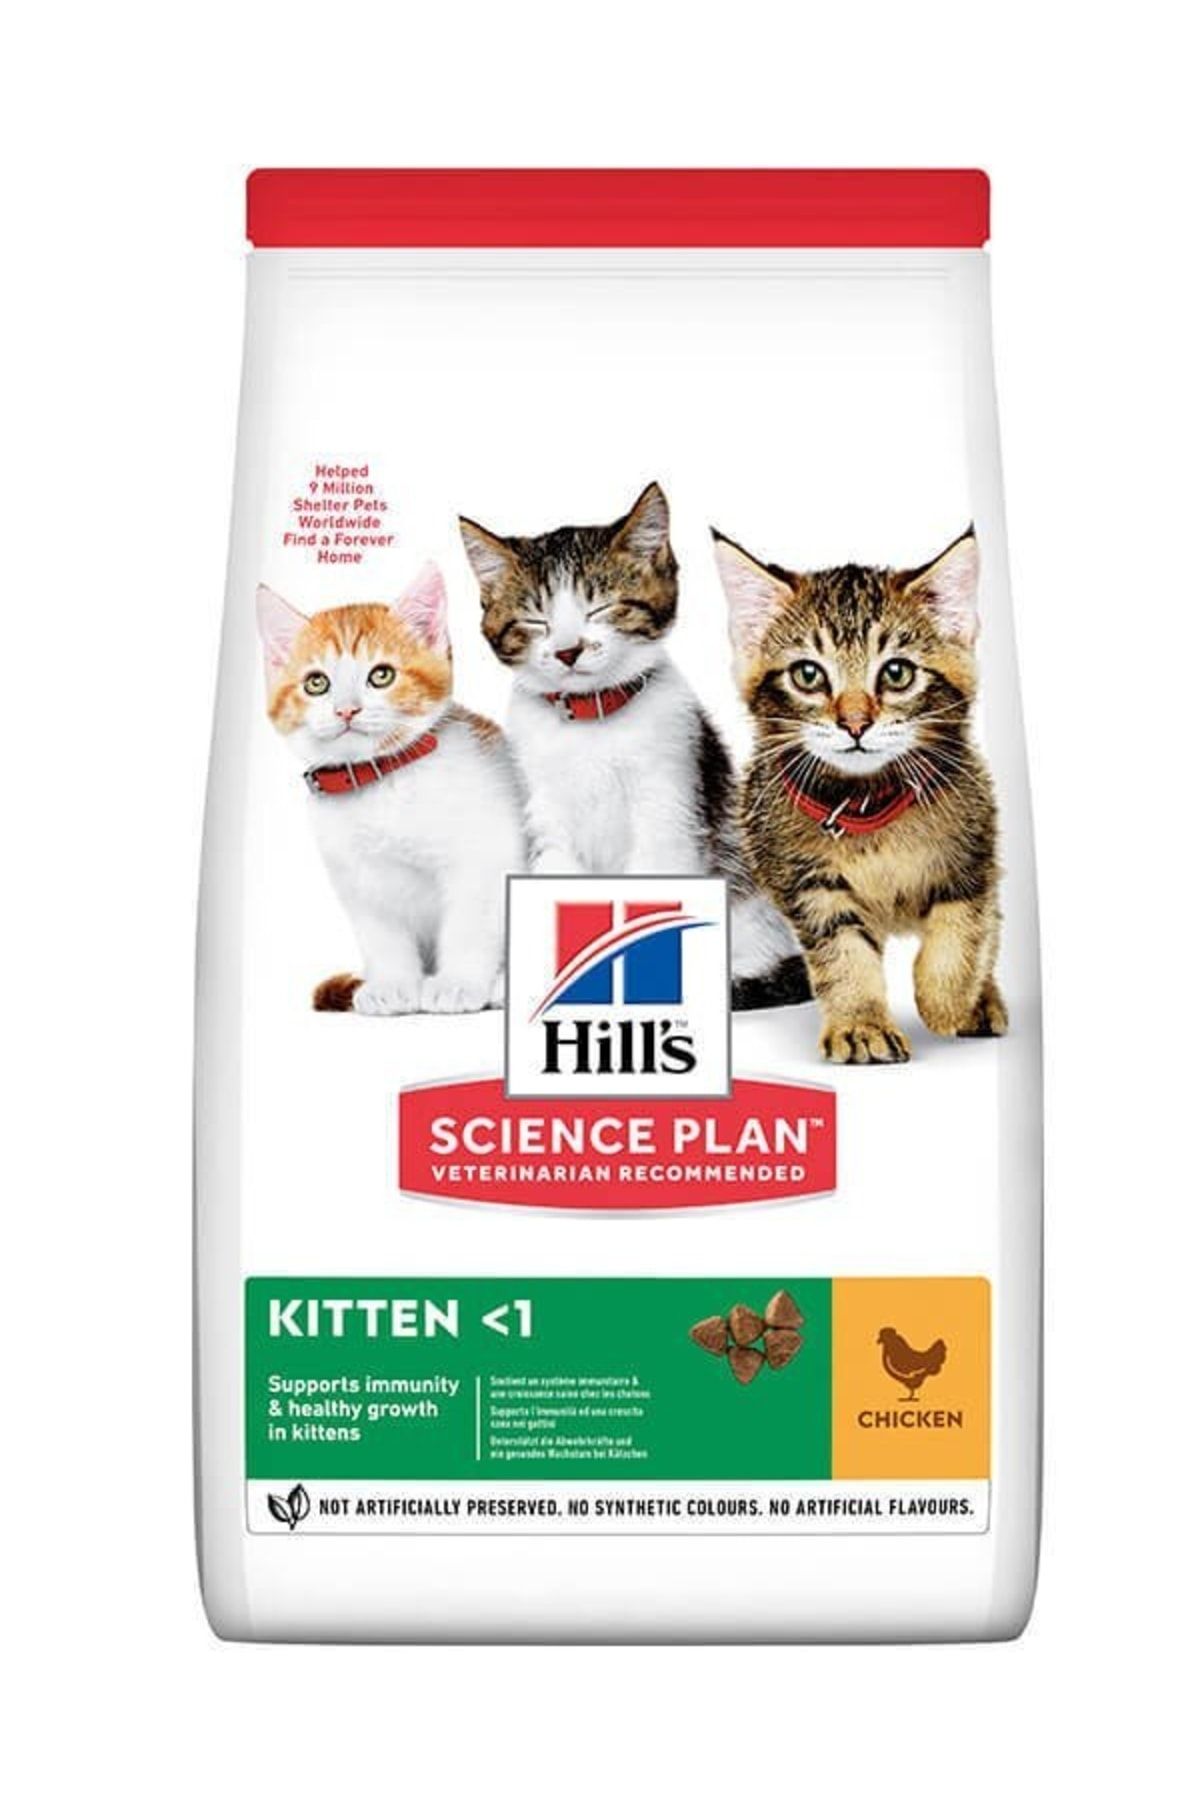 Hill's Hills Kitten Tavuklu Yavru Kedi Maması 1.5 Kg